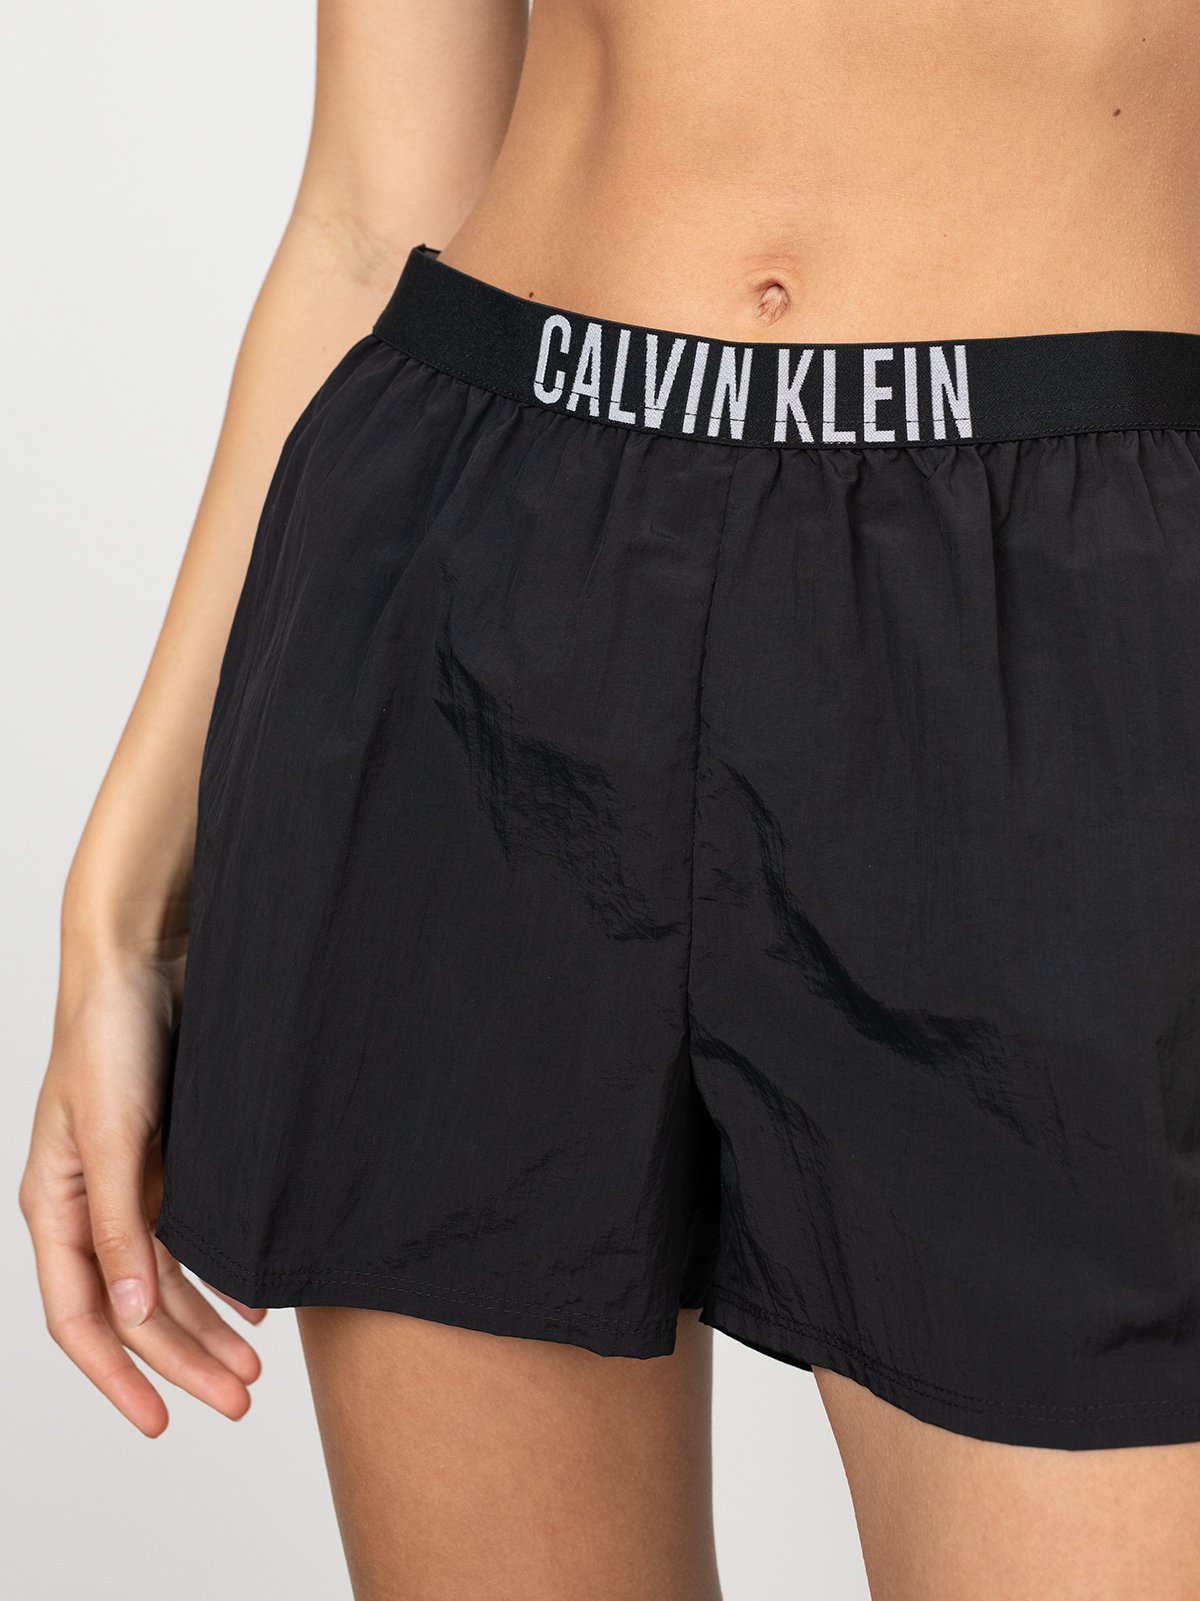 Women's swim shorts black Calvin Klein Underwear